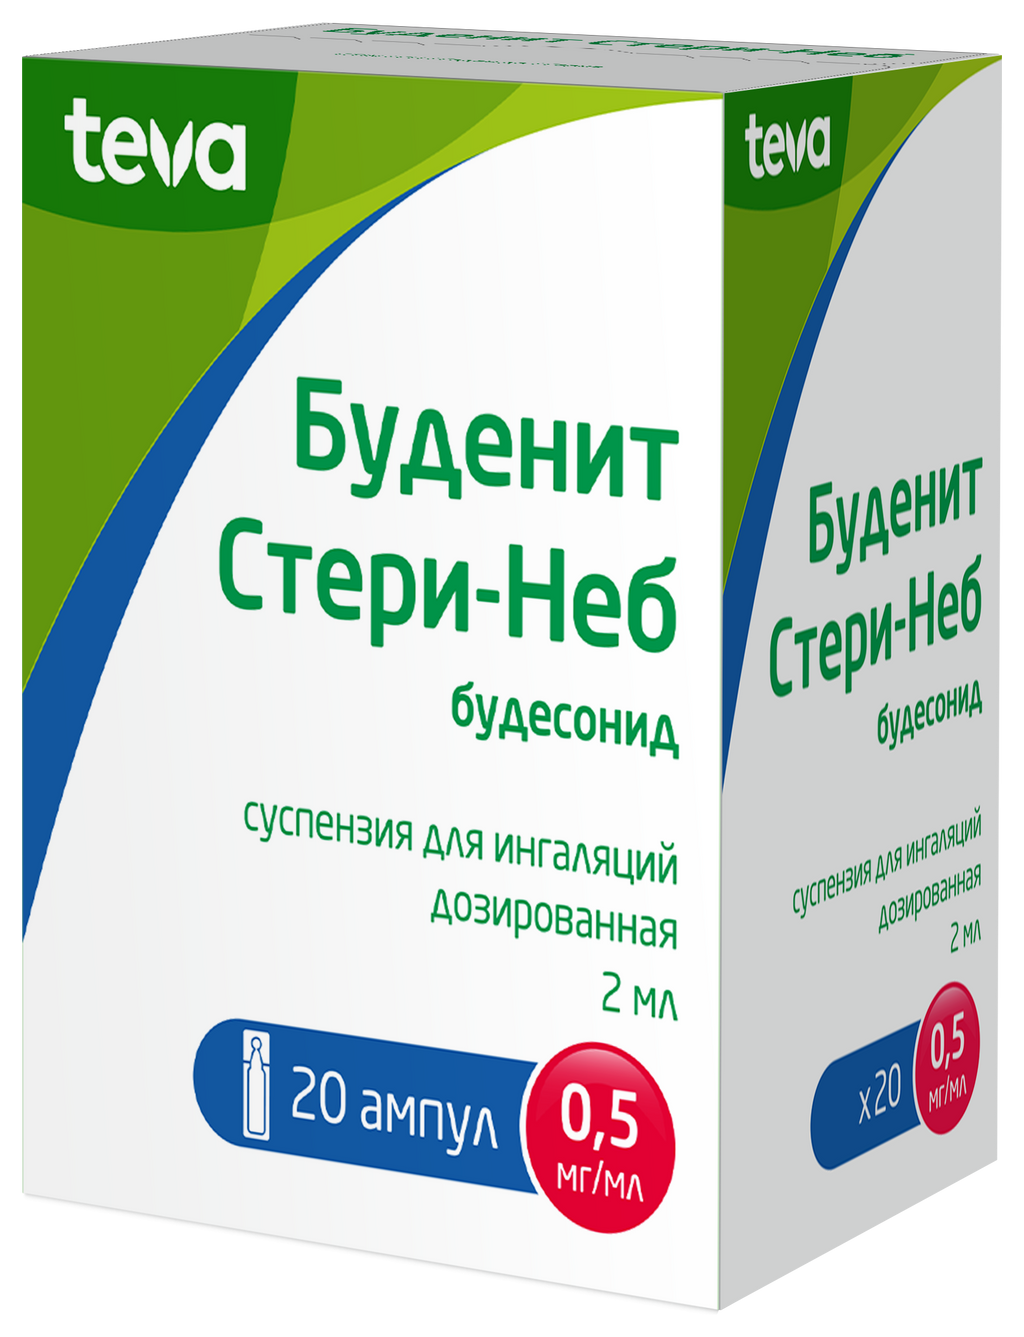 Буденит Стери-Неб, 0.5 мг/мл, суспензия для ингаляций дозированная, 2 мл, 20 шт. купить по цене от 840 руб в Москве, заказать с доставкой в аптеку, инструкция по применению, отзывы, аналоги, Teva